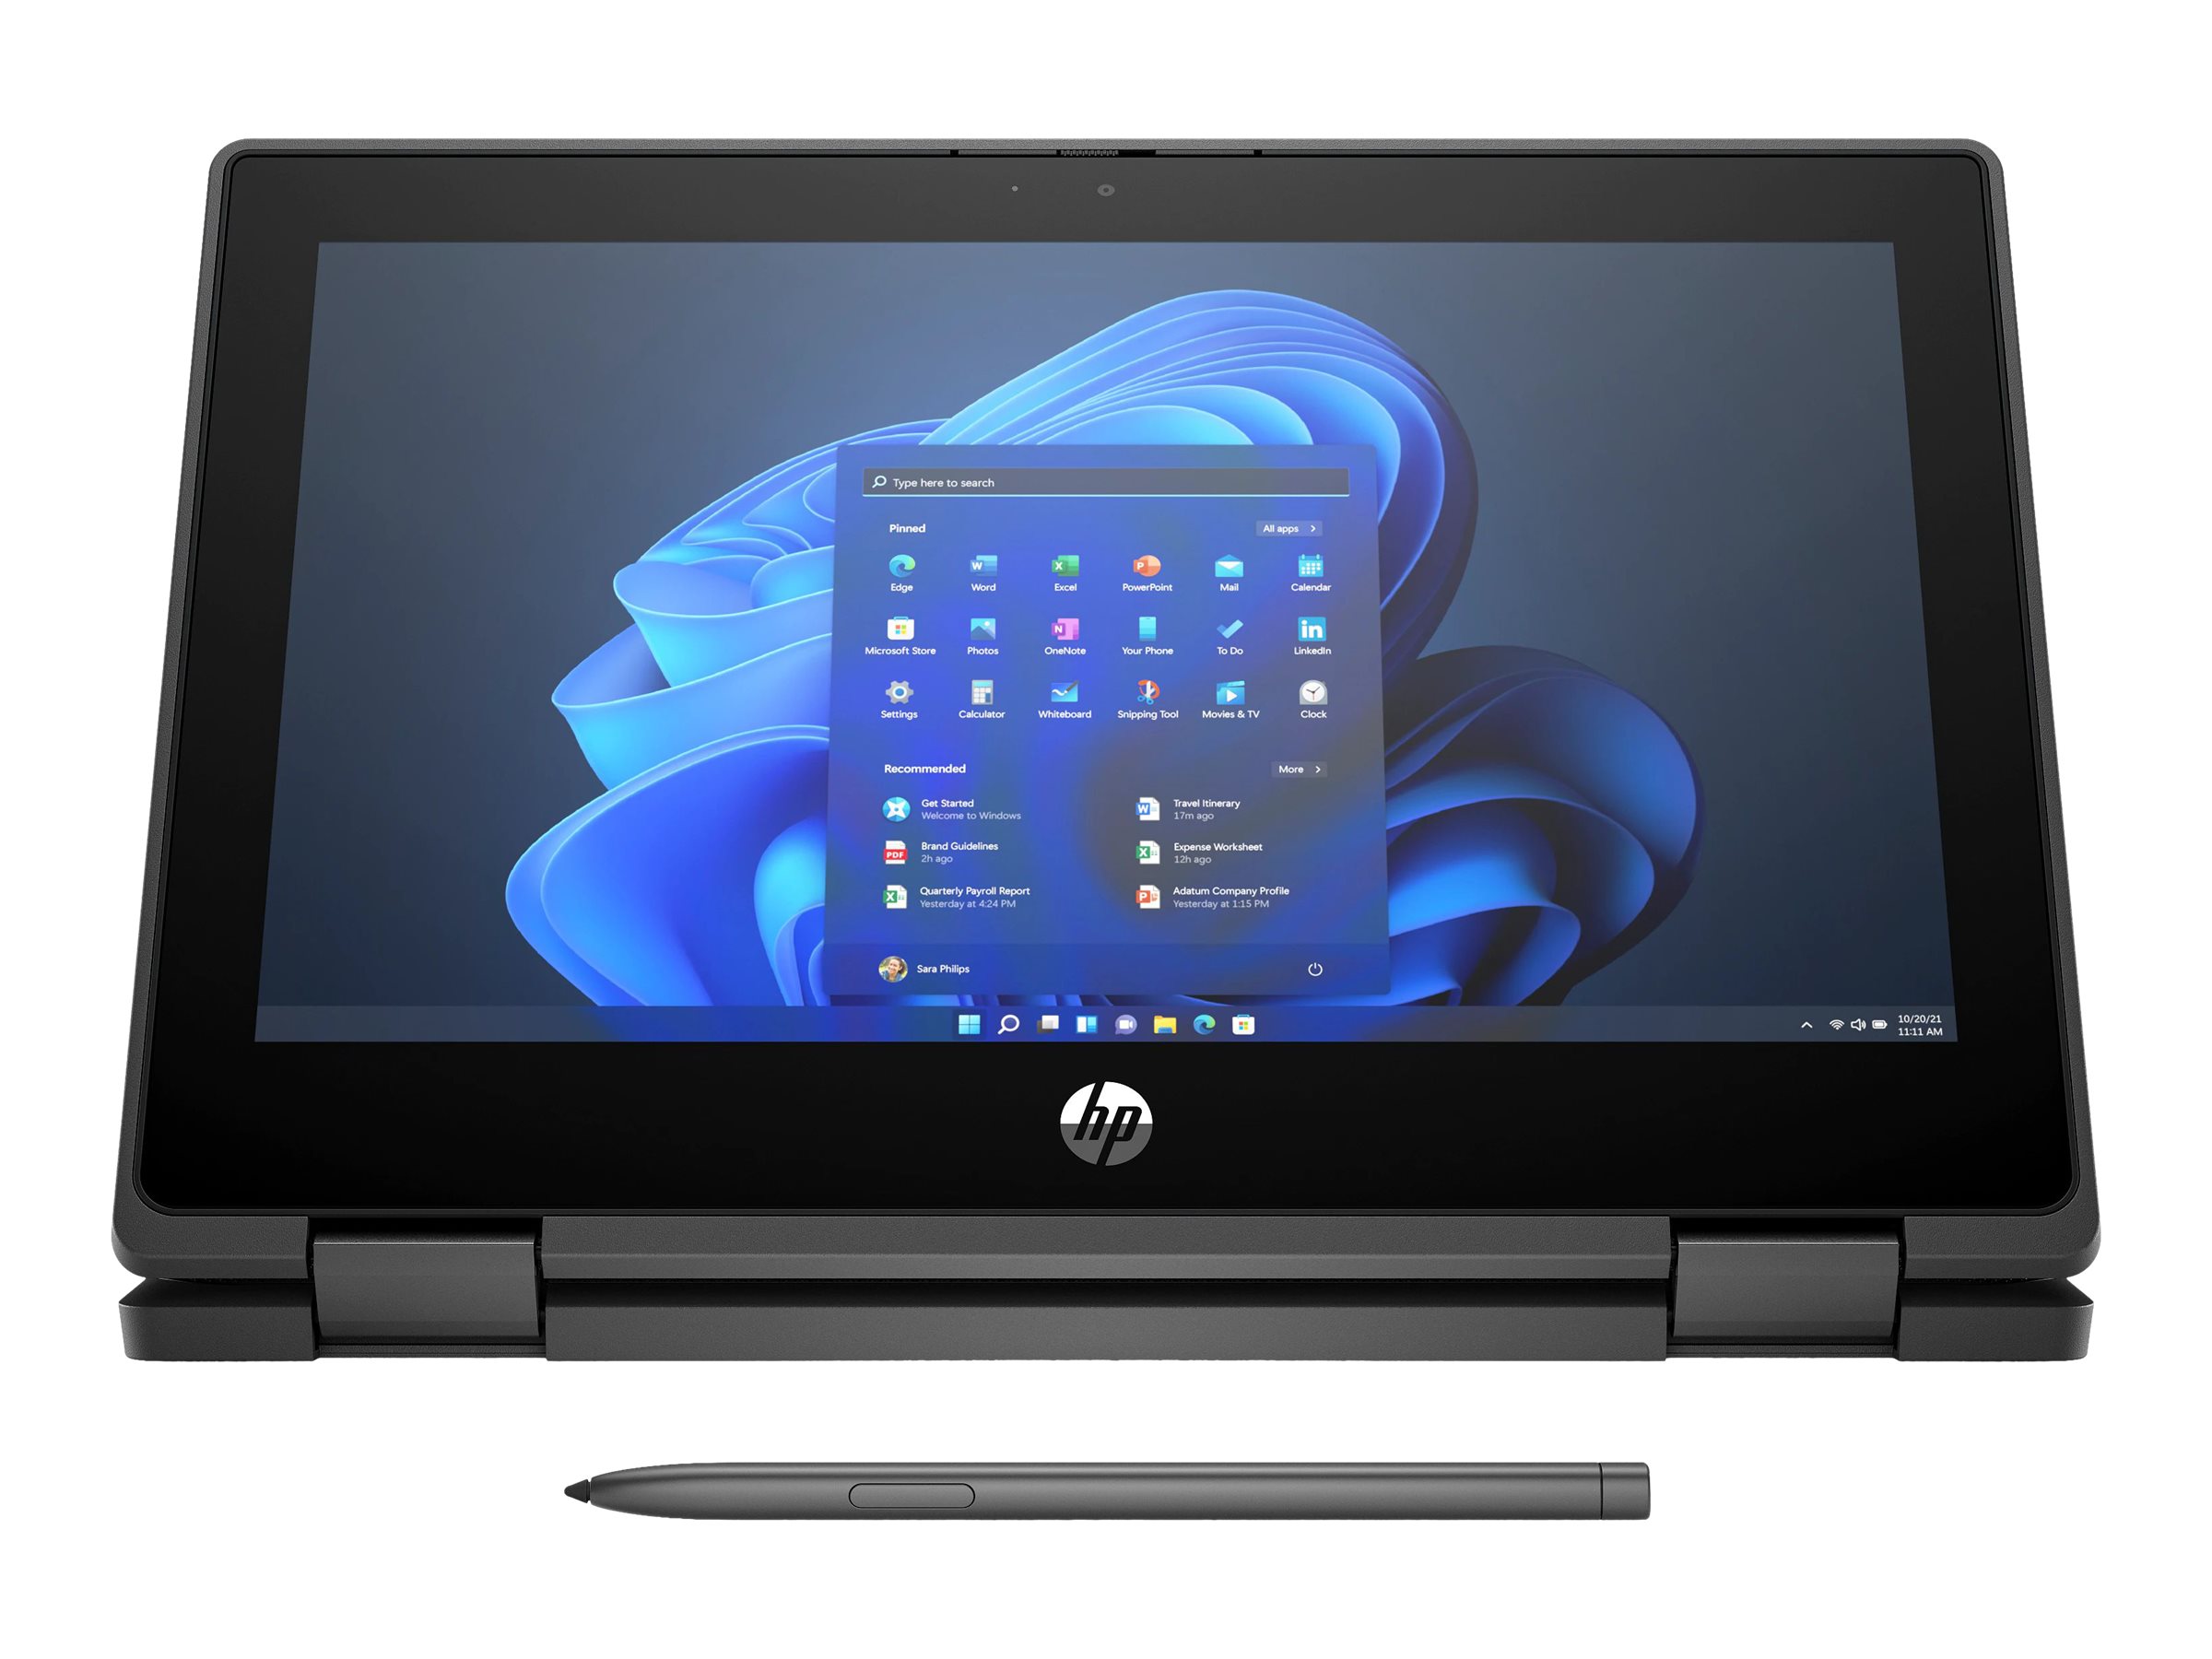 Nuevo HP 11 Tablet PC: características, precio y ficha técnica